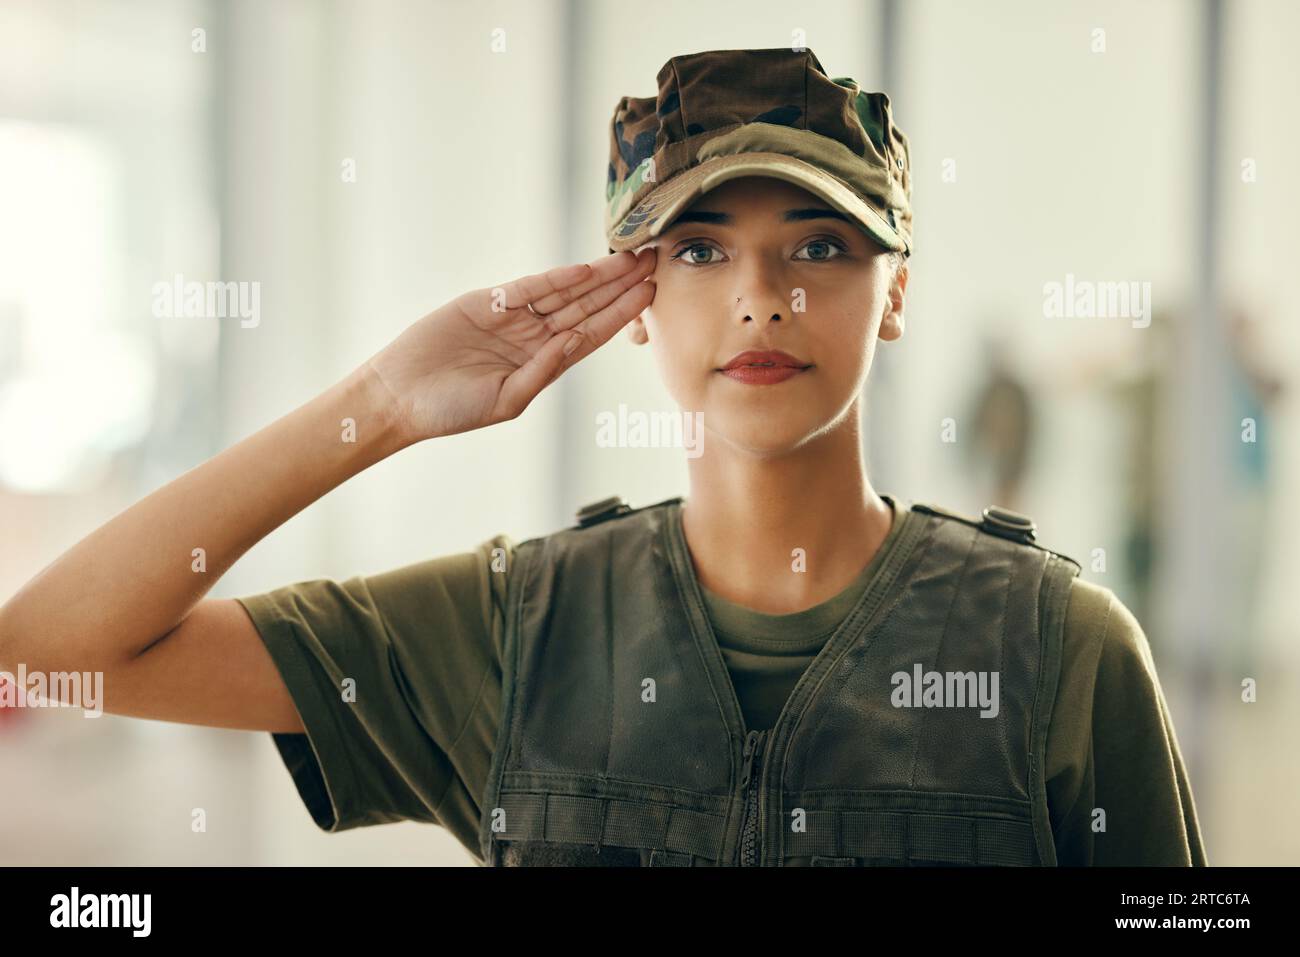 Militaire, salut et portrait de femme soldat avec confiance, fierté et respect pour le service. Sérieux, la sécurité et le visage de vétéran de l'armée féminine Banque D'Images